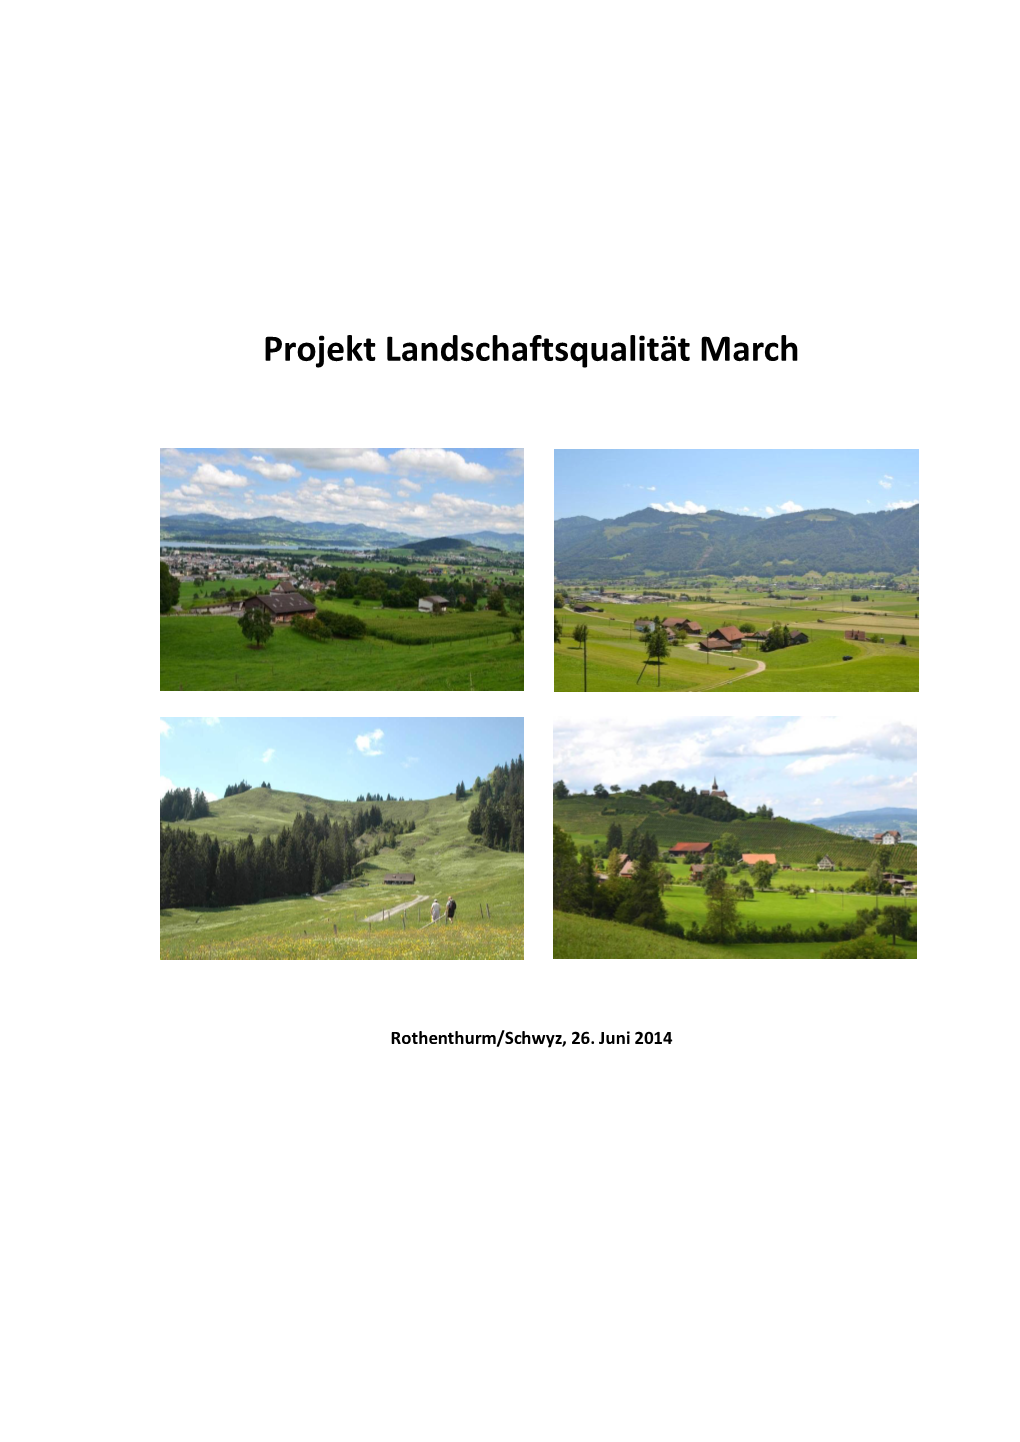 Projekt Landschaftsqualität March